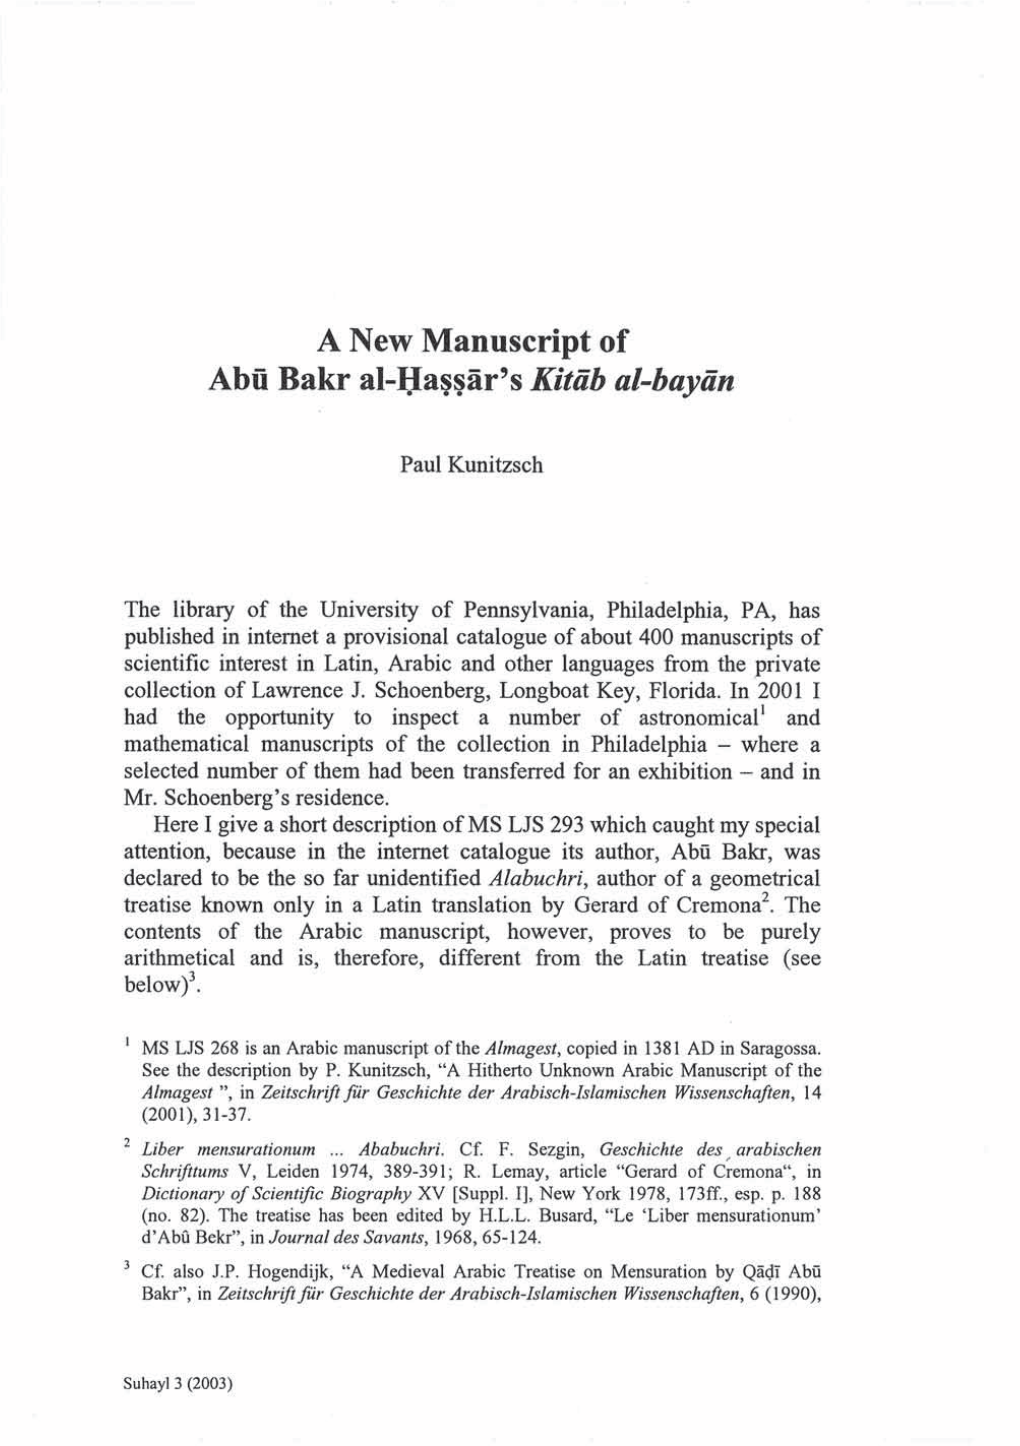 A New Manuscript of Abü Bakr Al-I;Ia~~Iir'skitab Al-Bayan